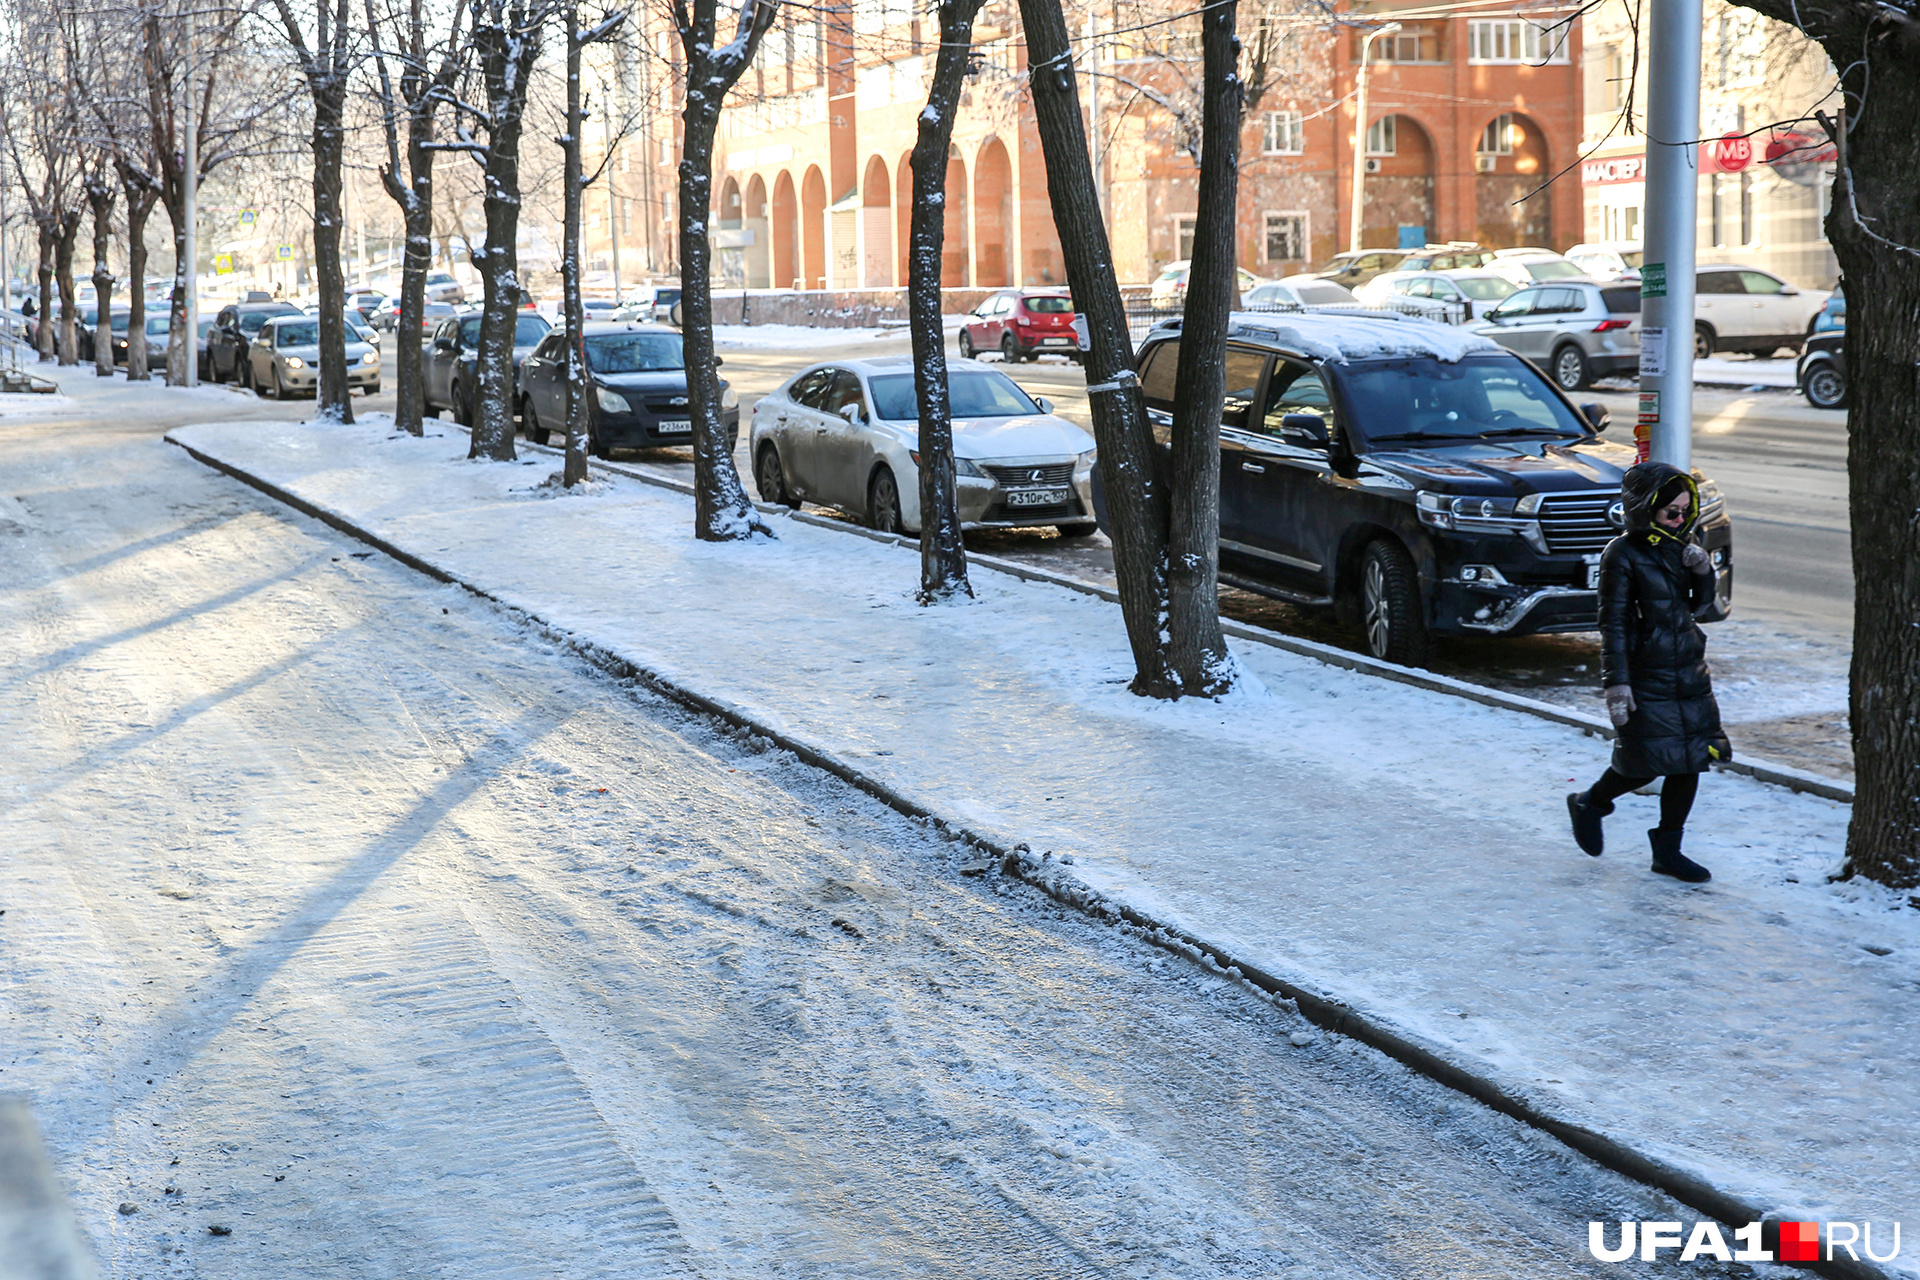 Даже солнце не помогает до конца растопить льдины на тротуаре